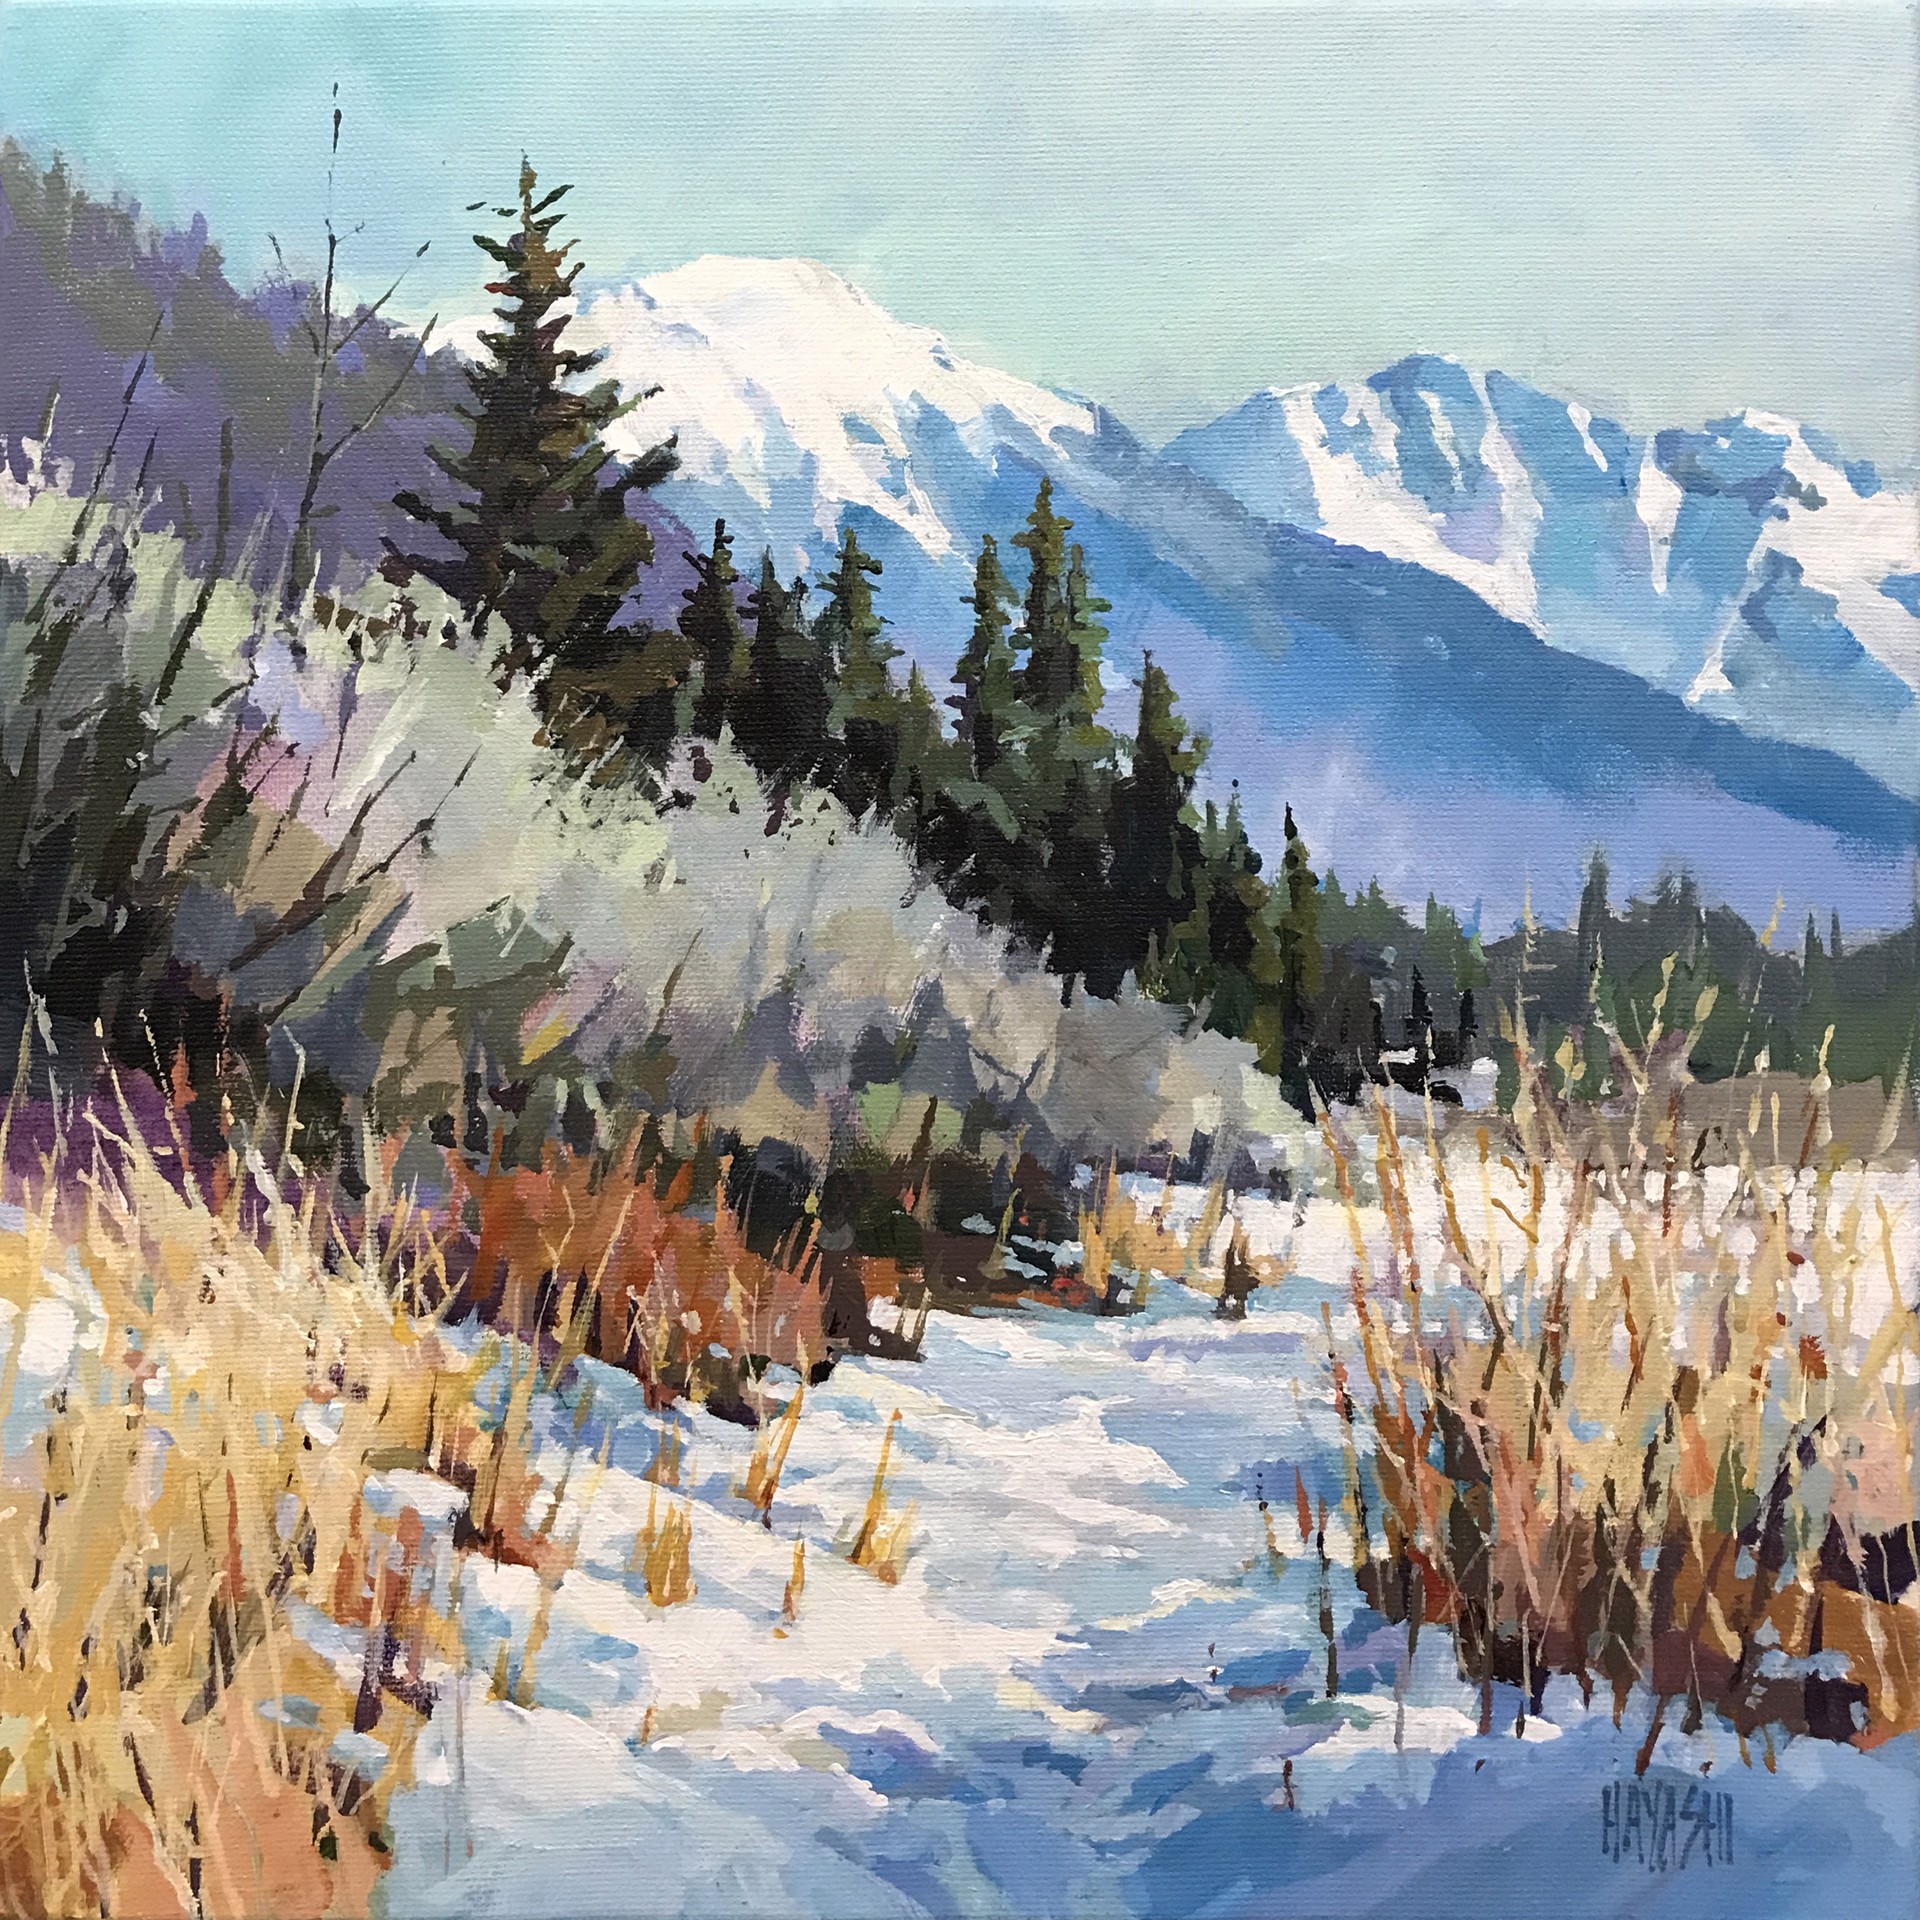 Snowy Trail by Randy Hayashi